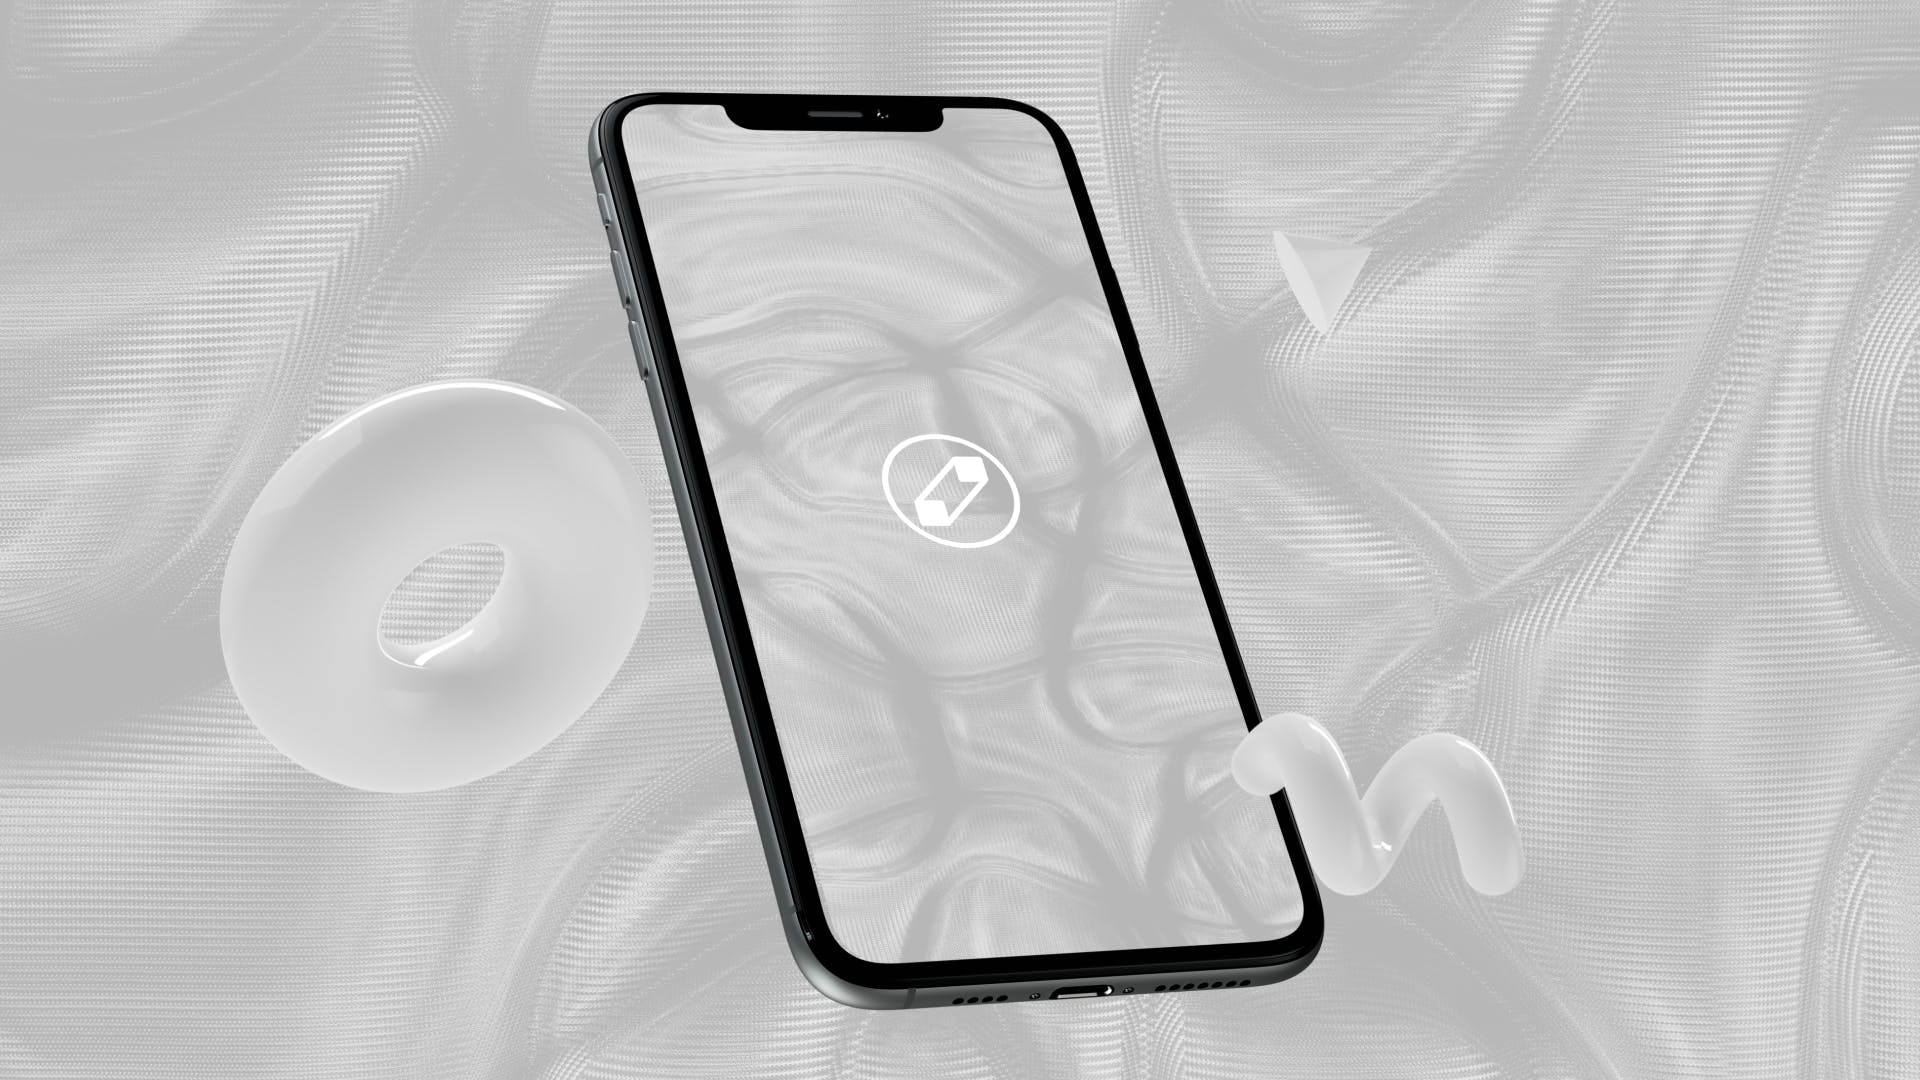 优雅时尚风格3D立体风格iPhone手机屏幕预览素材库精选样机 10 Light Phone Mockups插图(5)